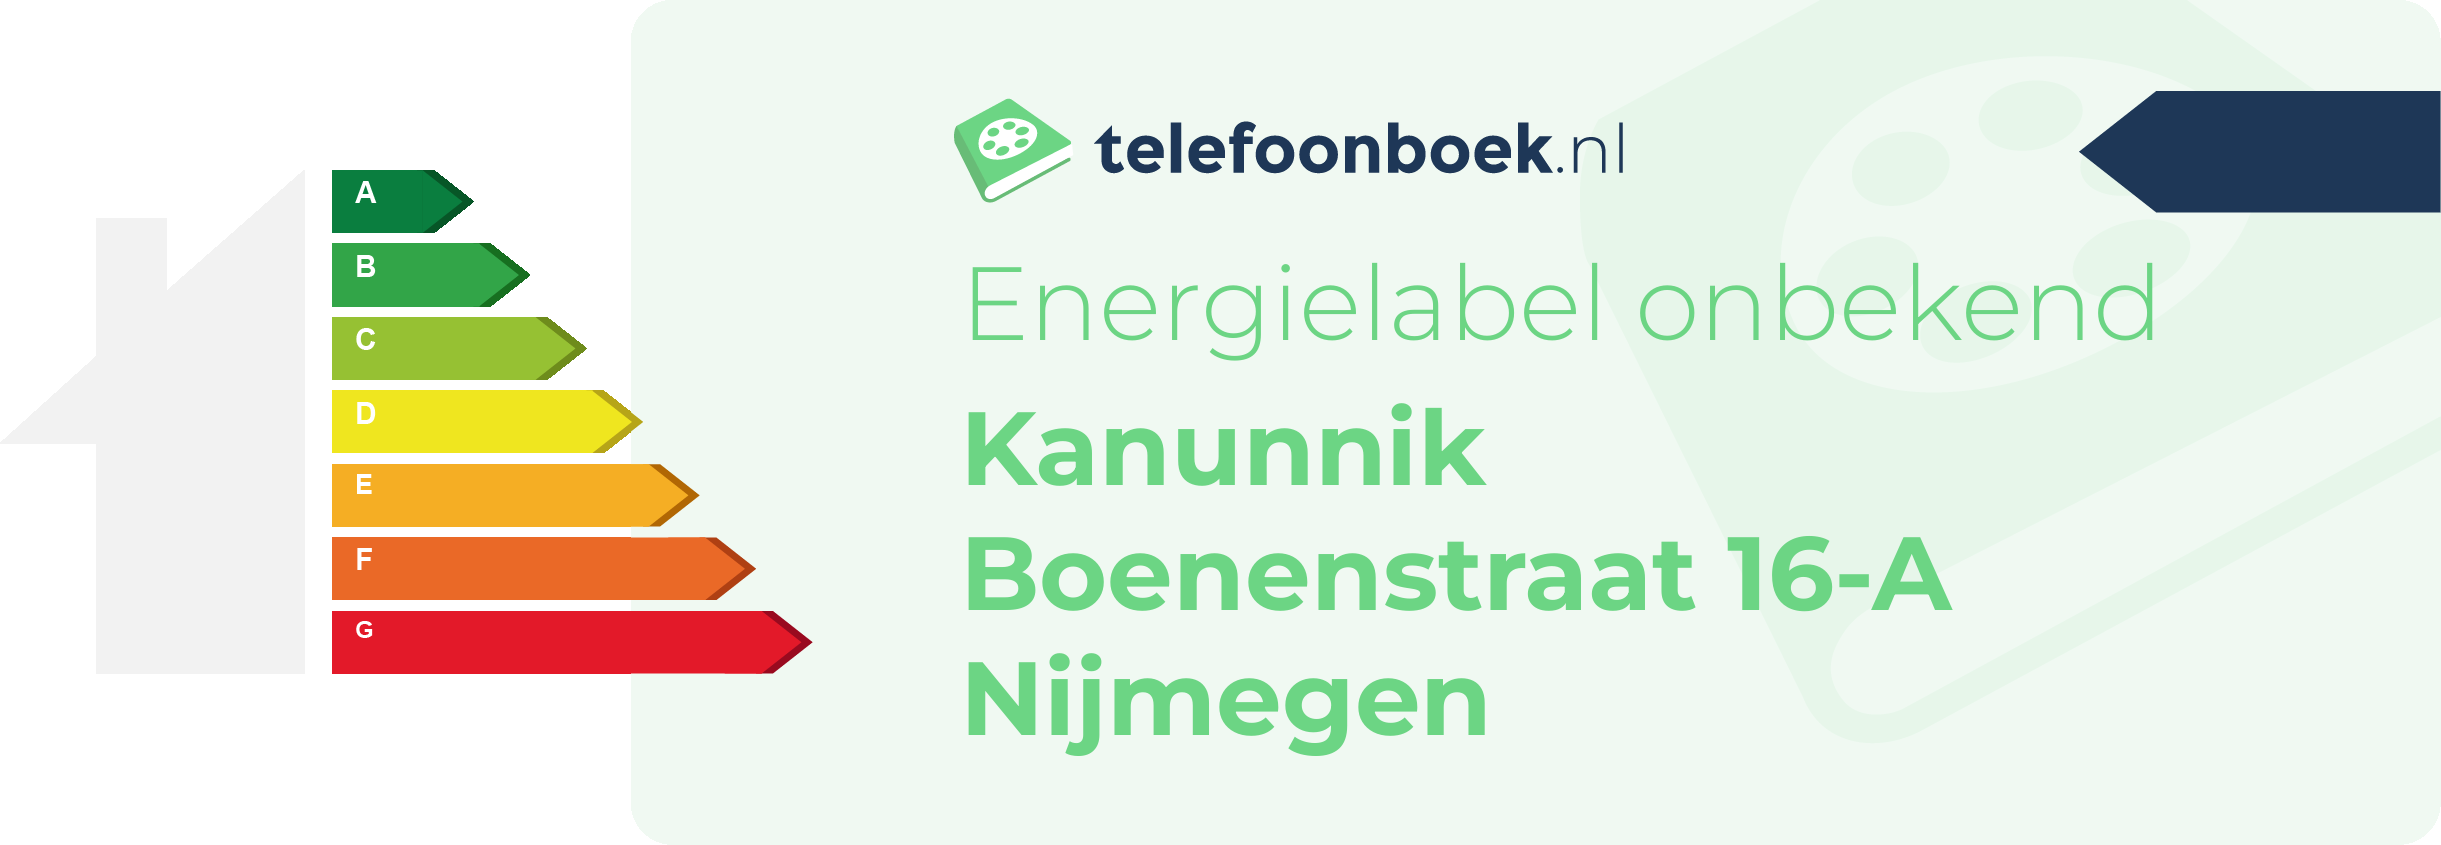 Energielabel Kanunnik Boenenstraat 16-A Nijmegen